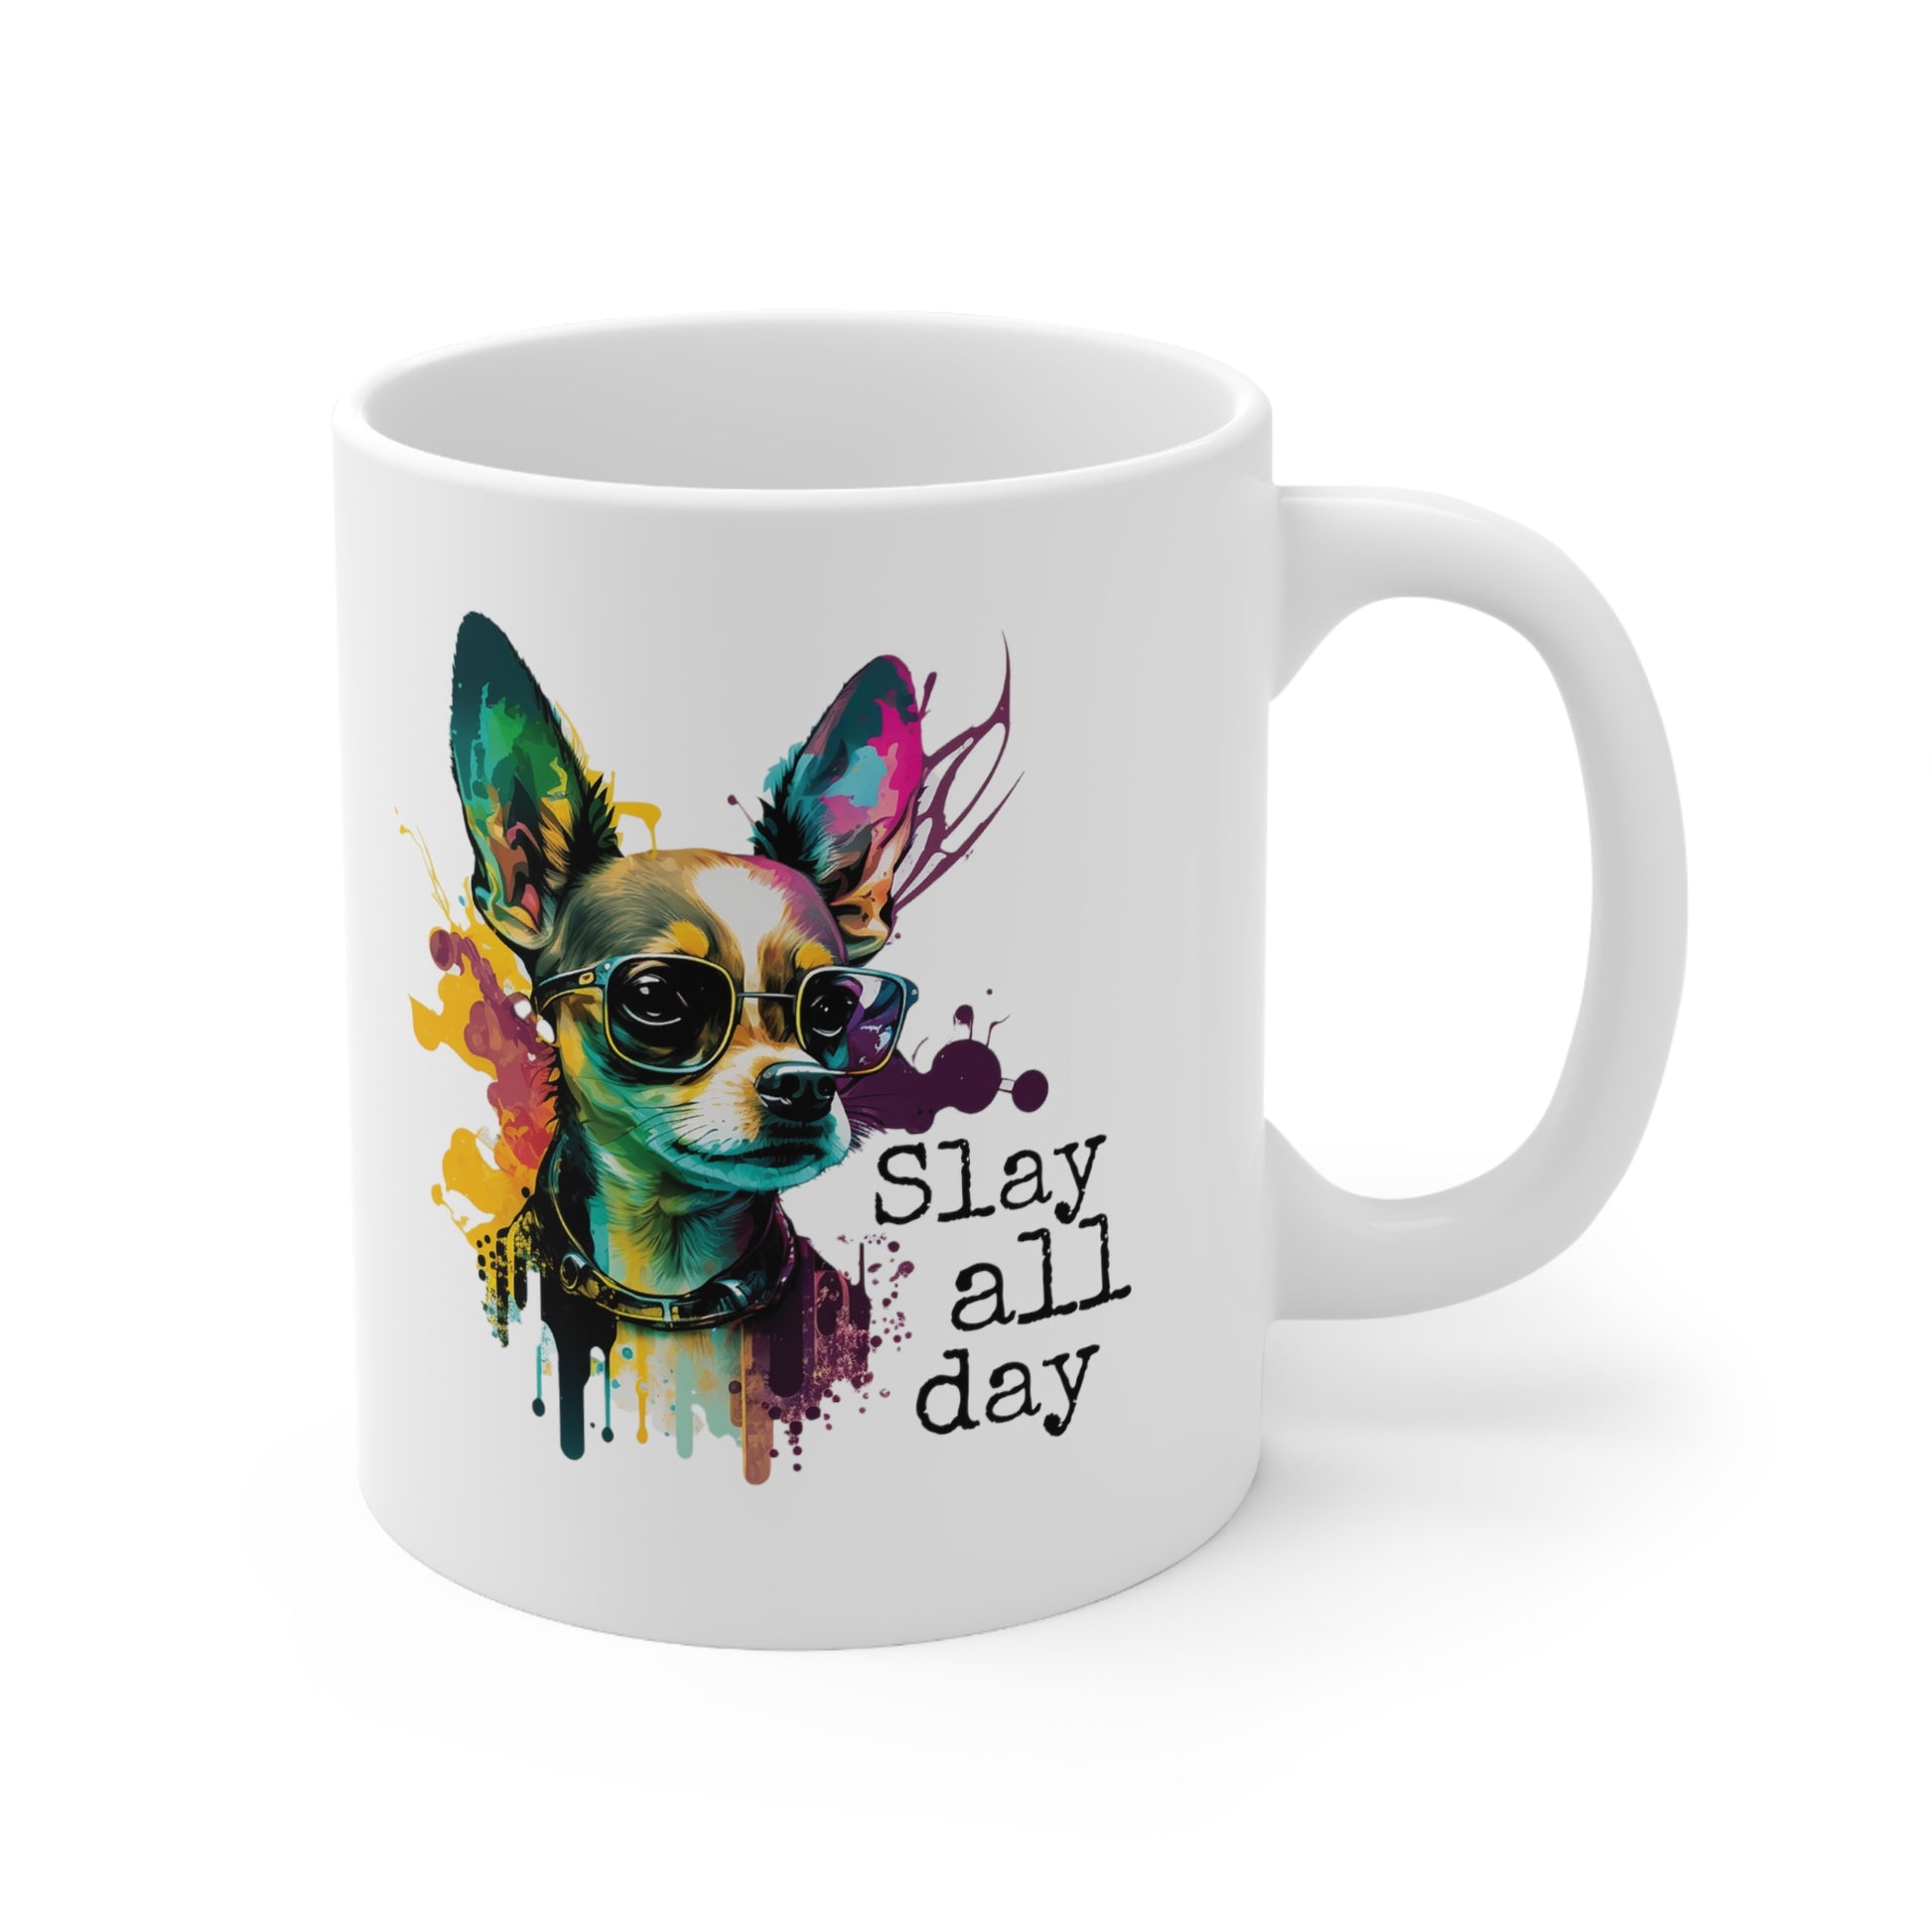 Slay All Day mug